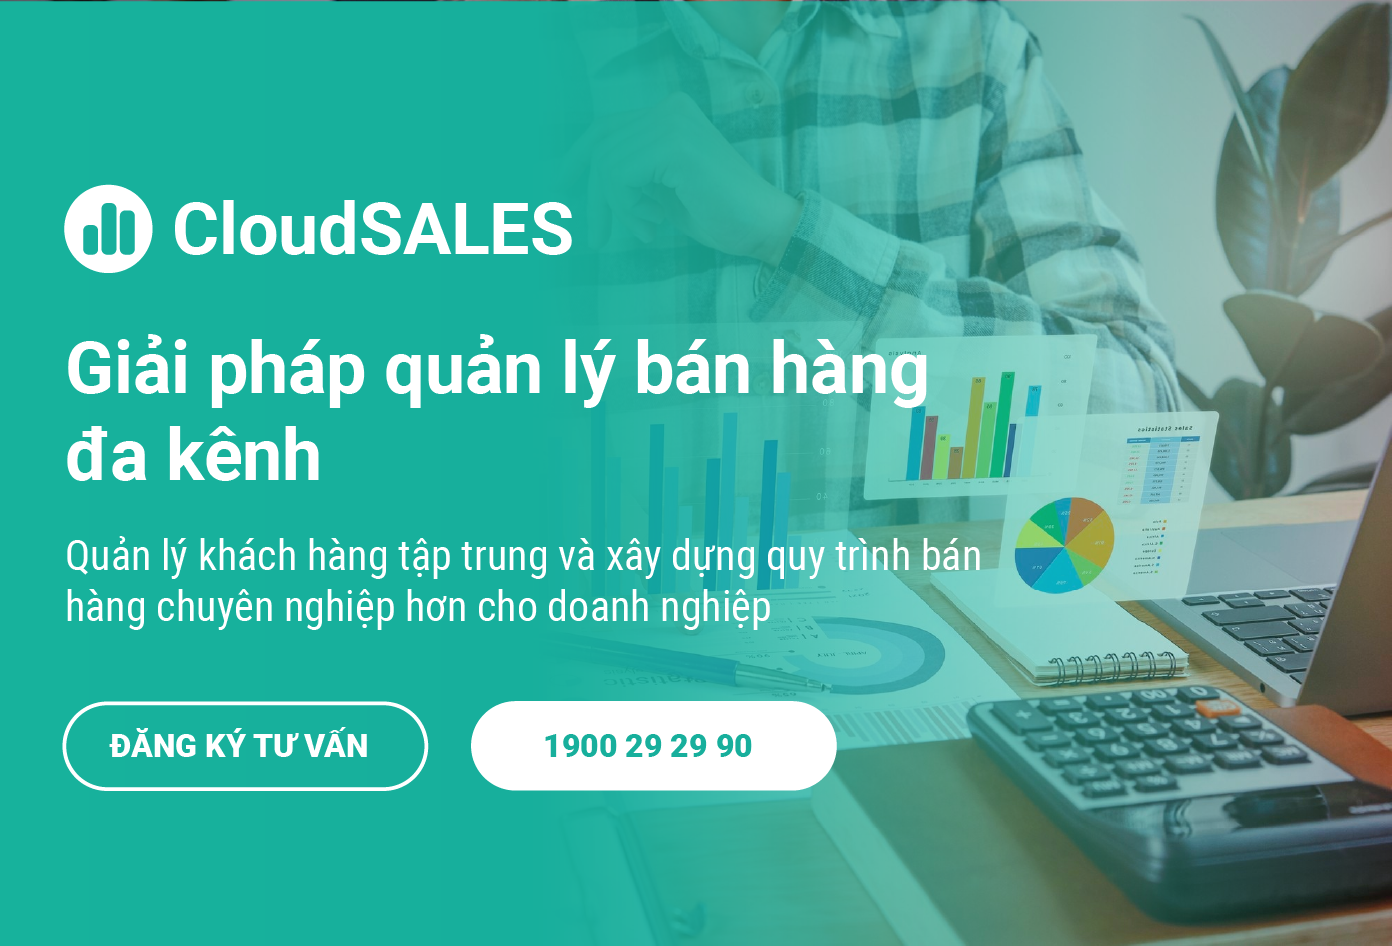 CloudSALES giải pháp bán hàng toàn diện cho doanh nghiệp